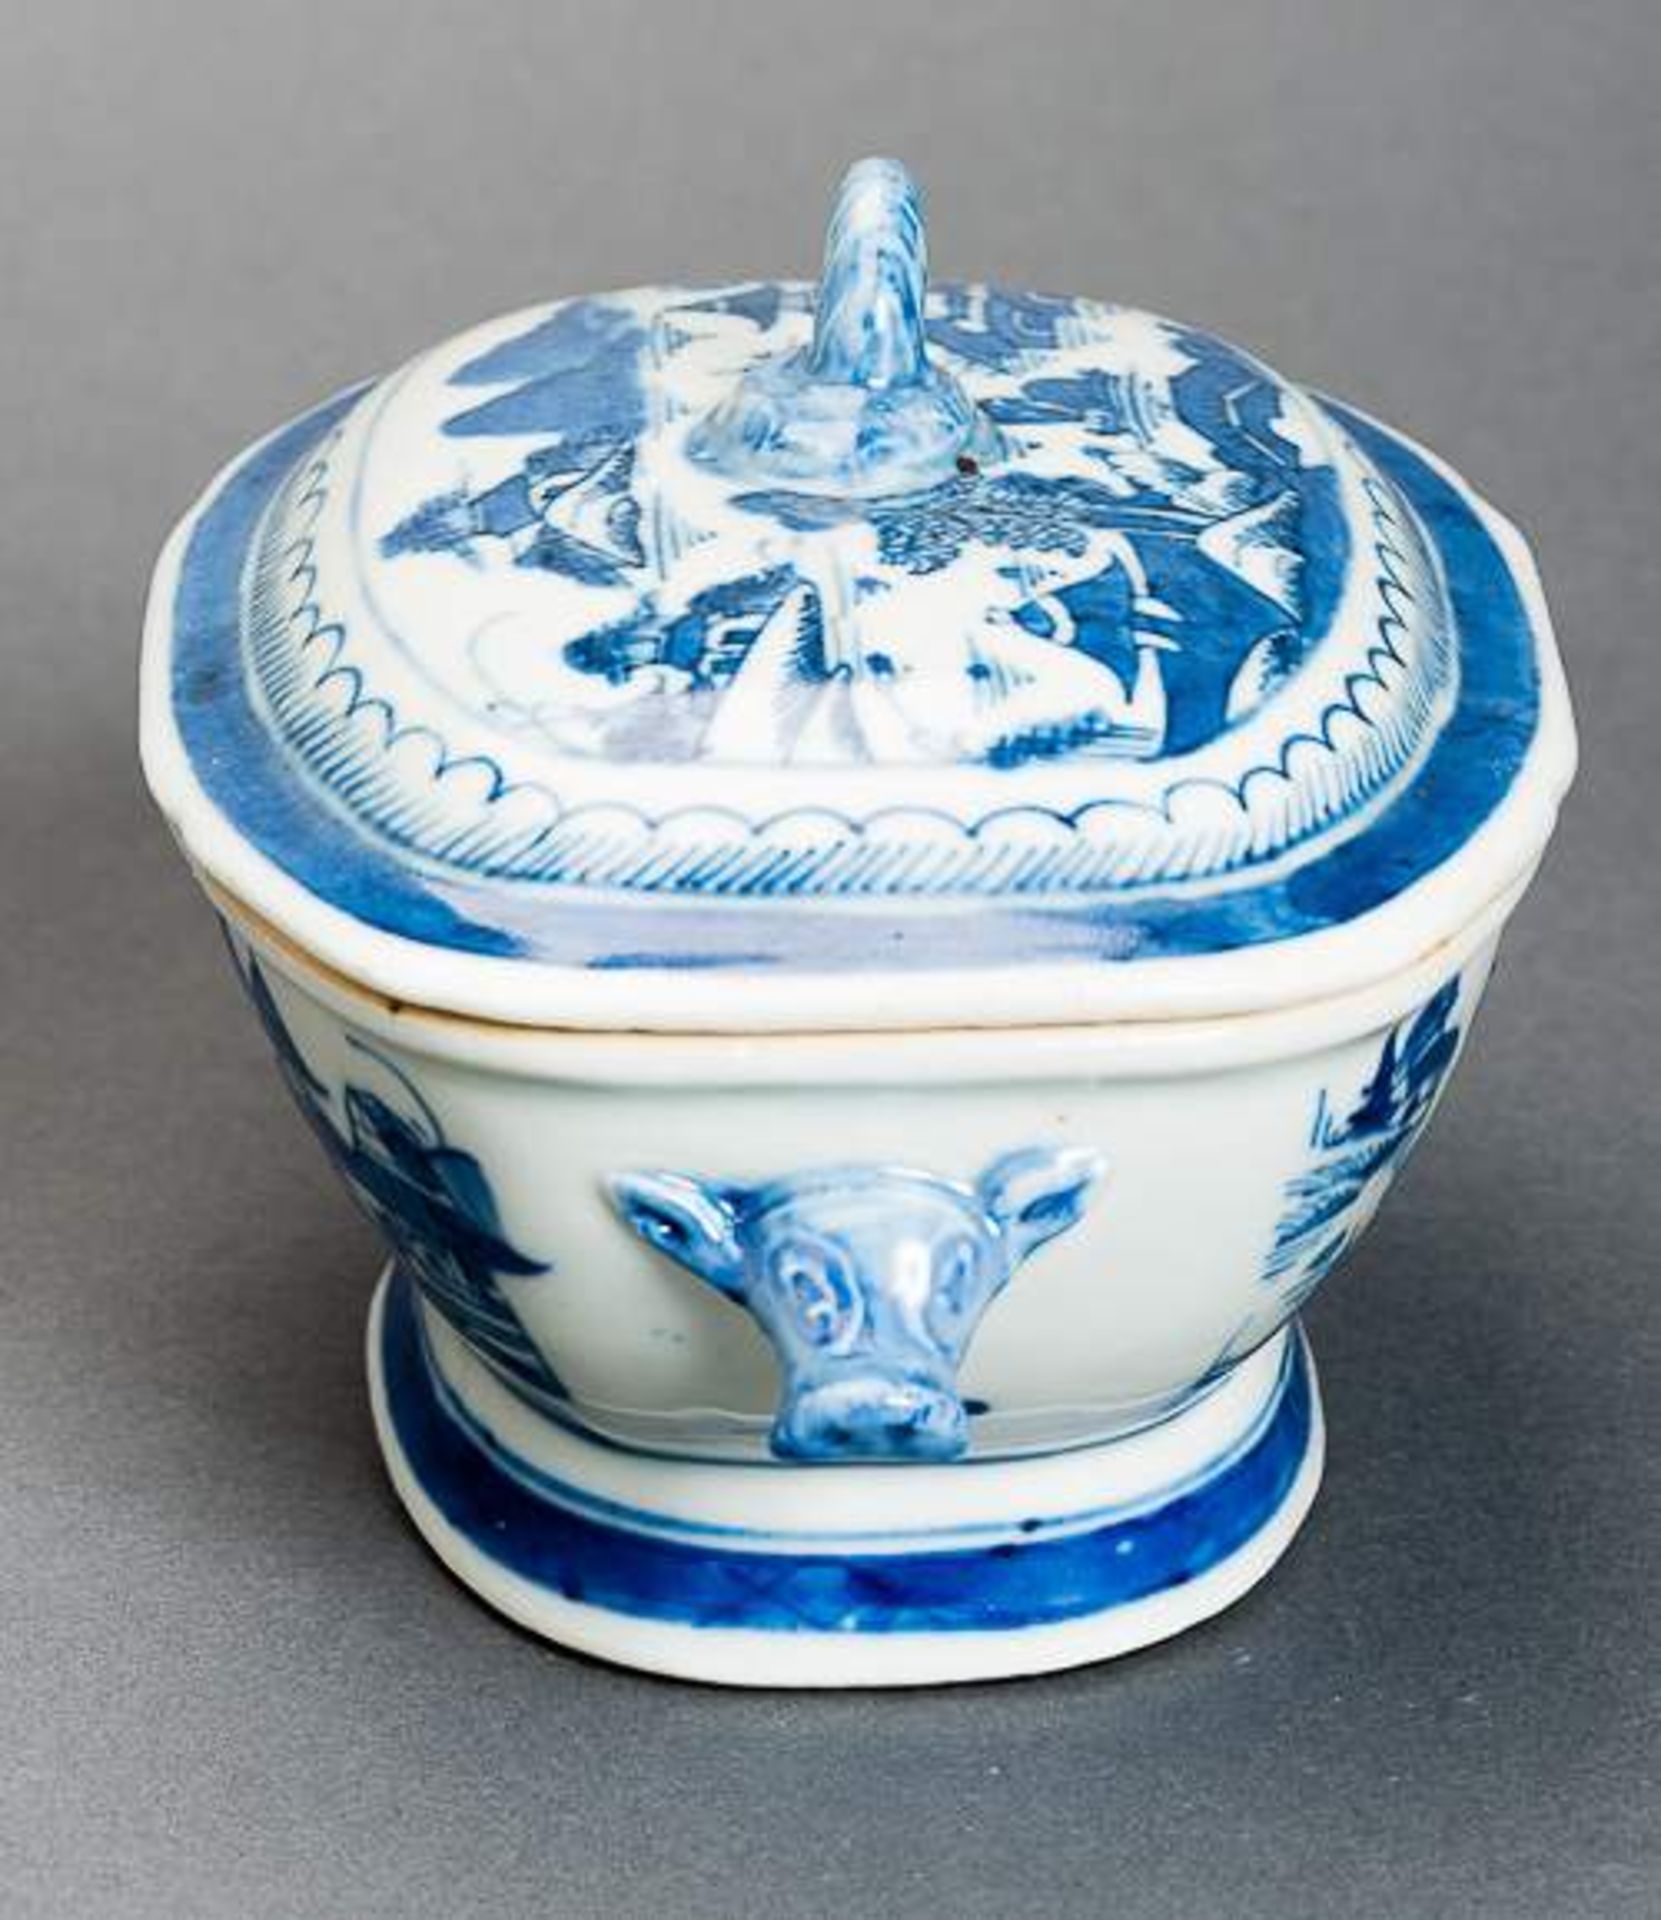 DECKELSCHALE Blauweiß-Porzellan. China, Qing-Dynastie, 19. Jh. Diese sehr ansprechende oval- - Image 4 of 11